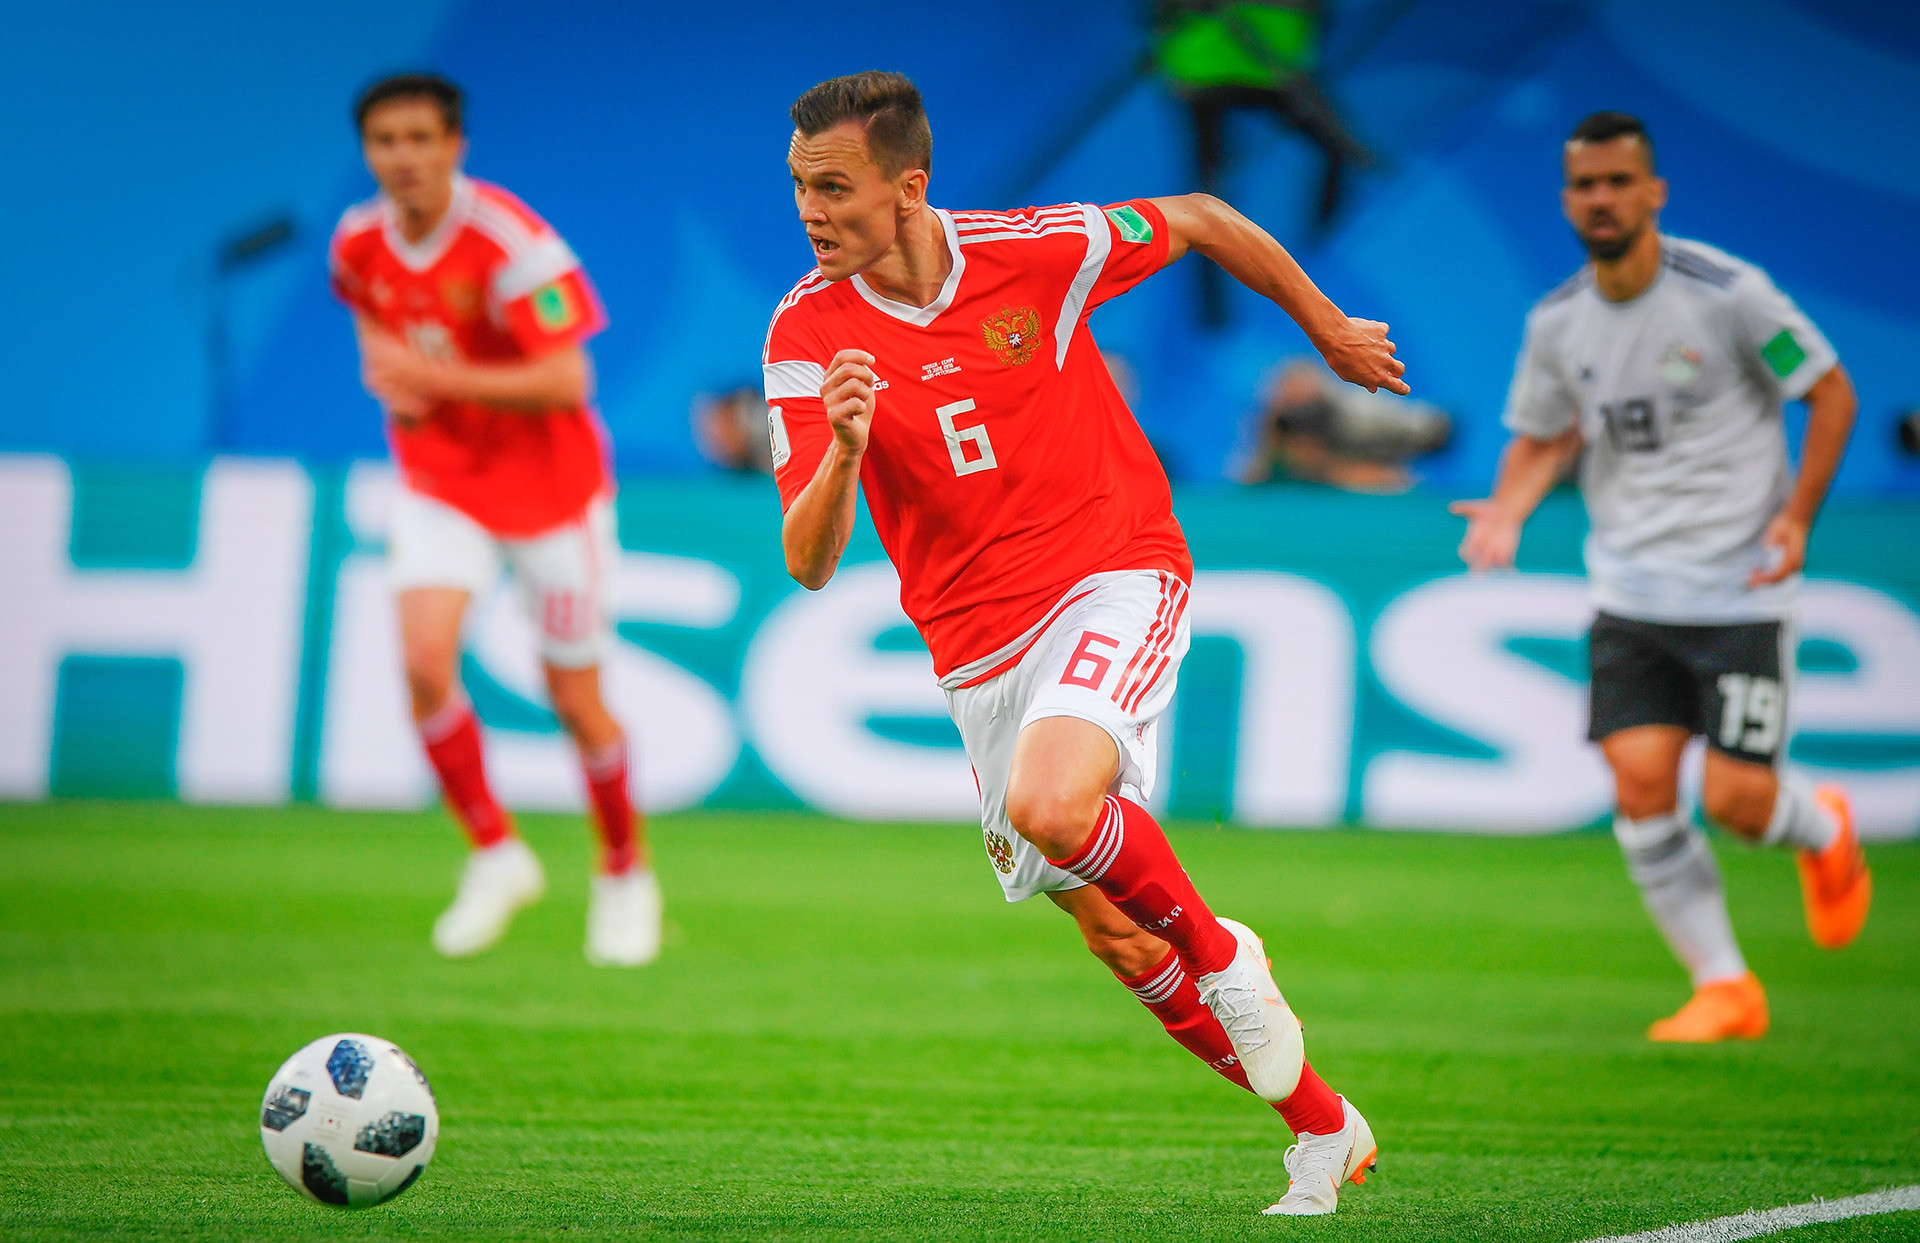 Denis Cheryshev, penyerang terbaik tim Rusia dalam pertandingan. Ia Mencetak gol melawan Arab Saudi (dua kali), Mesir, dan Kroasia.